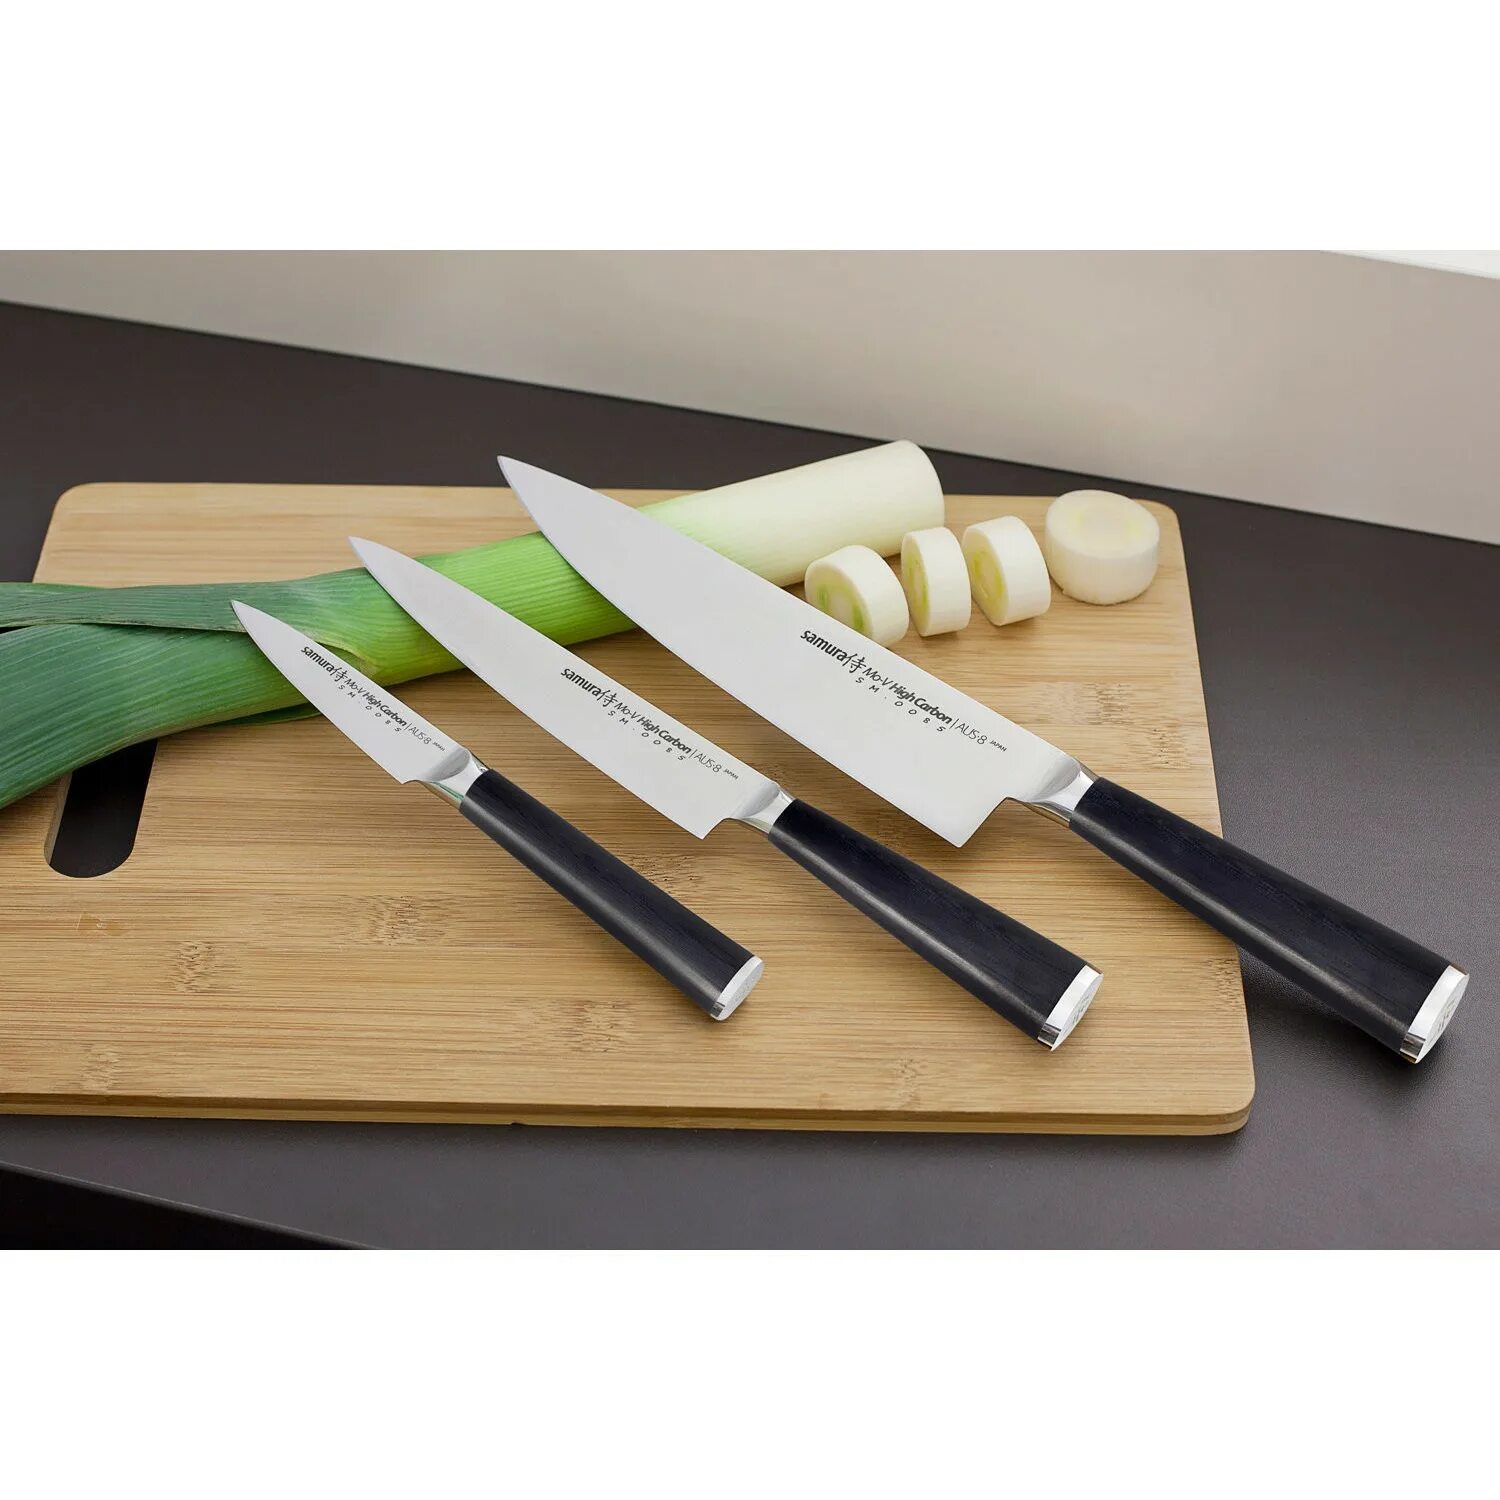 Недорогие кухонные ножи. Японские ножи Самура. Японские кухонные ножи Самура. Ножи японские кухонные Samura. Нож поварской Samura.